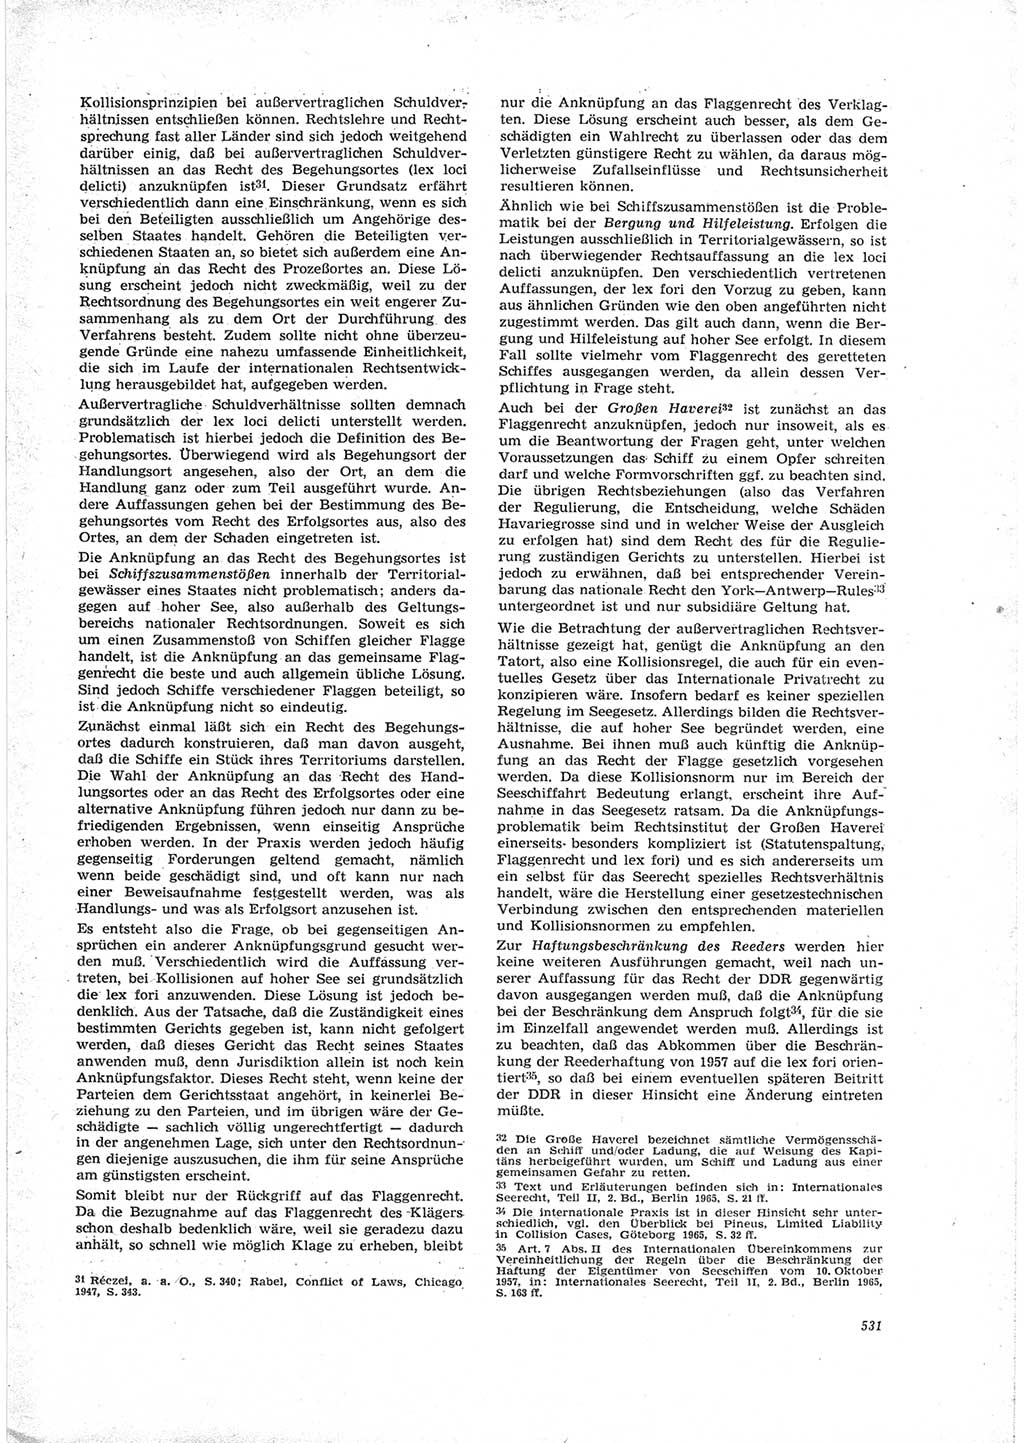 Neue Justiz (NJ), Zeitschrift für Recht und Rechtswissenschaft [Deutsche Demokratische Republik (DDR)], 23. Jahrgang 1969, Seite 531 (NJ DDR 1969, S. 531)